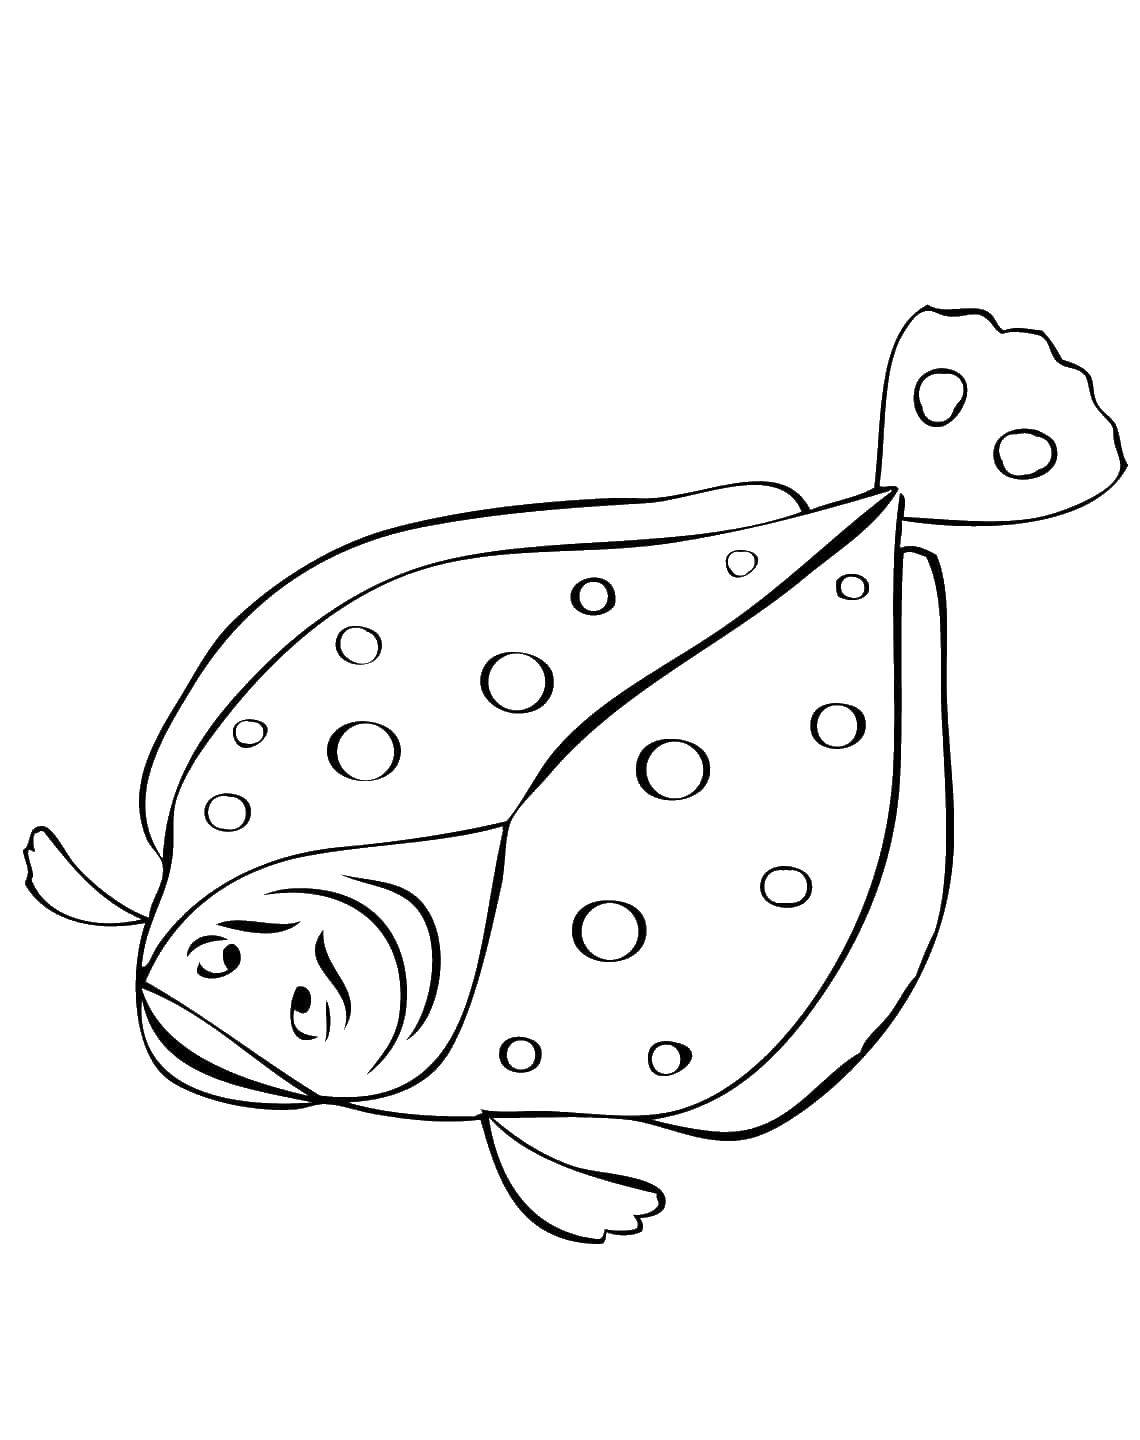 Название: Раскраска Камбала. Категория: раскраски. Теги: Подводный мир, рыба.